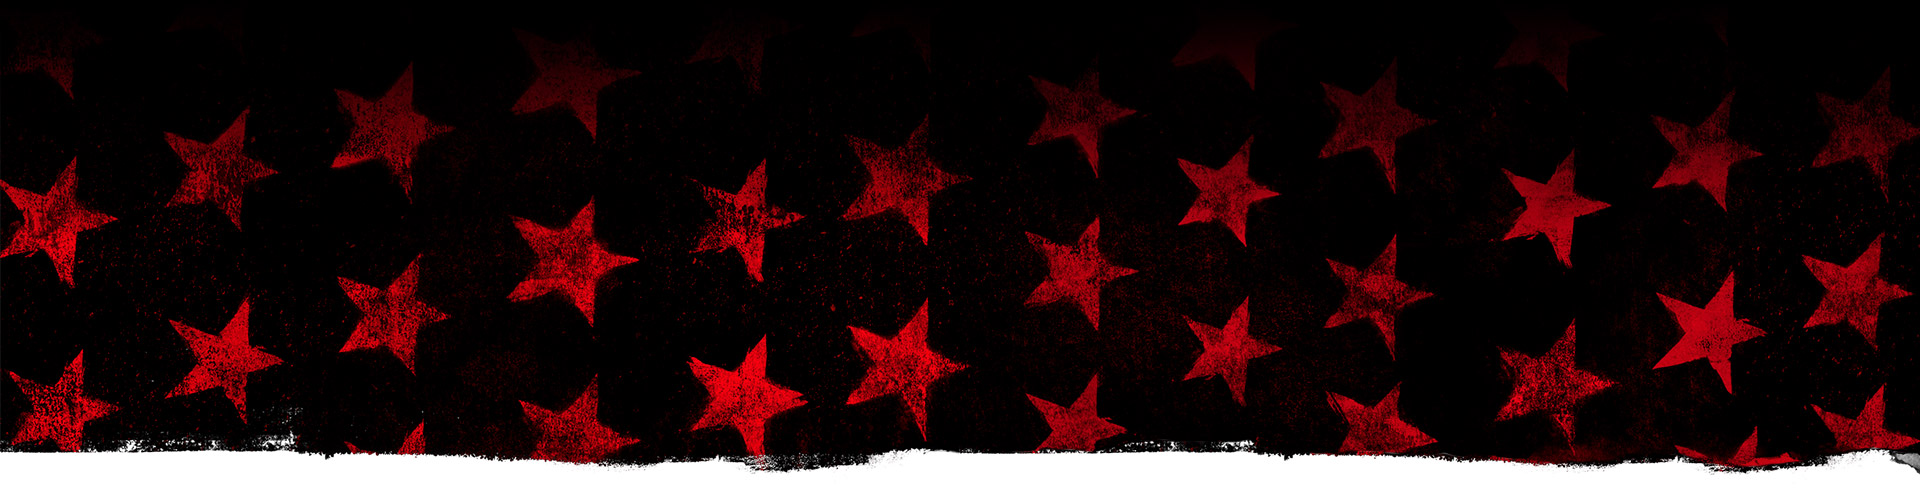 Piros csillagok fekete háttérrel.